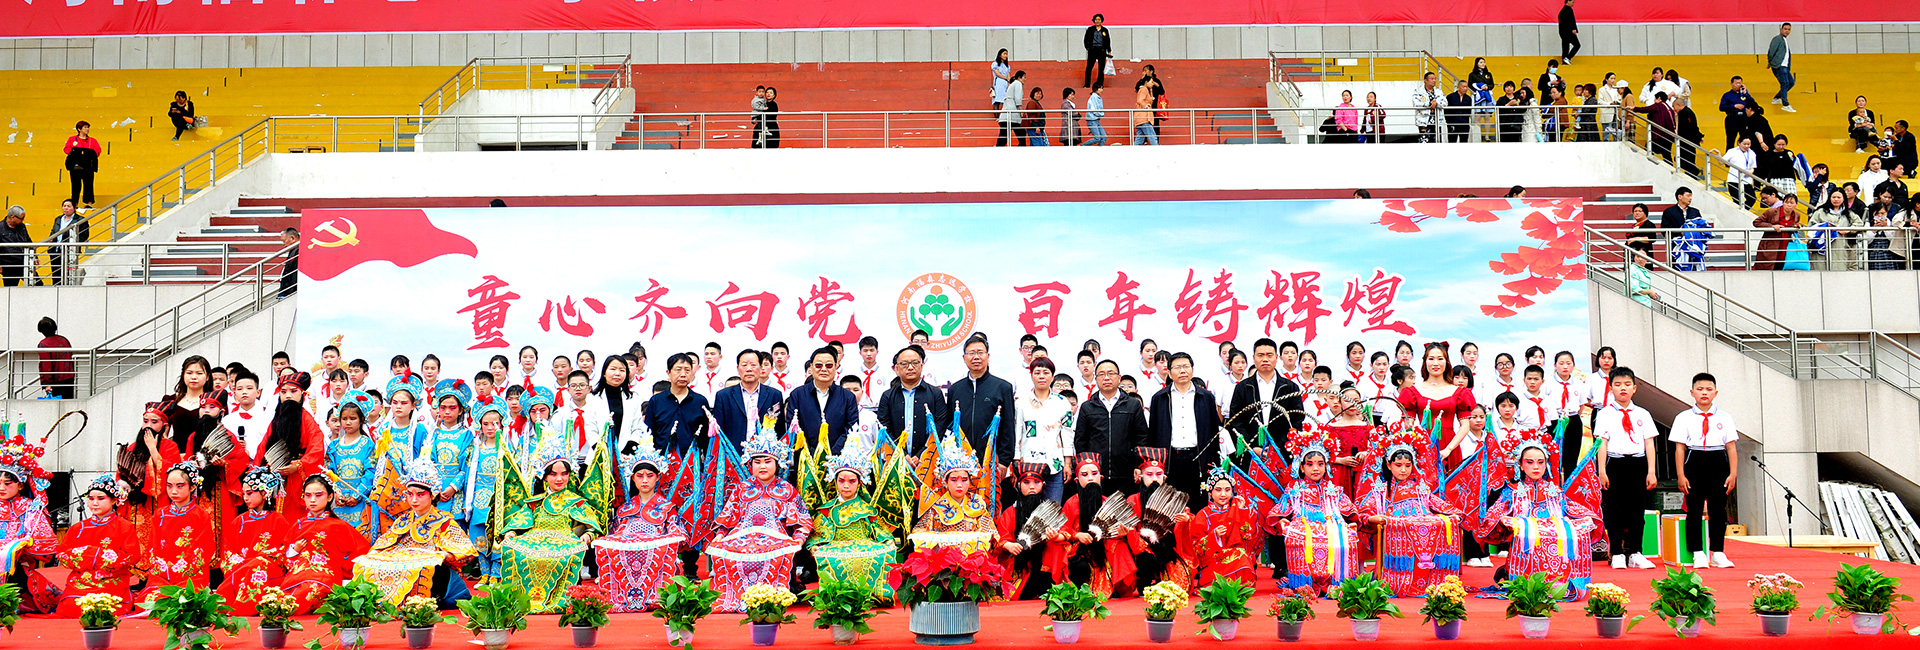 Henan Fusen Zhiyuan School